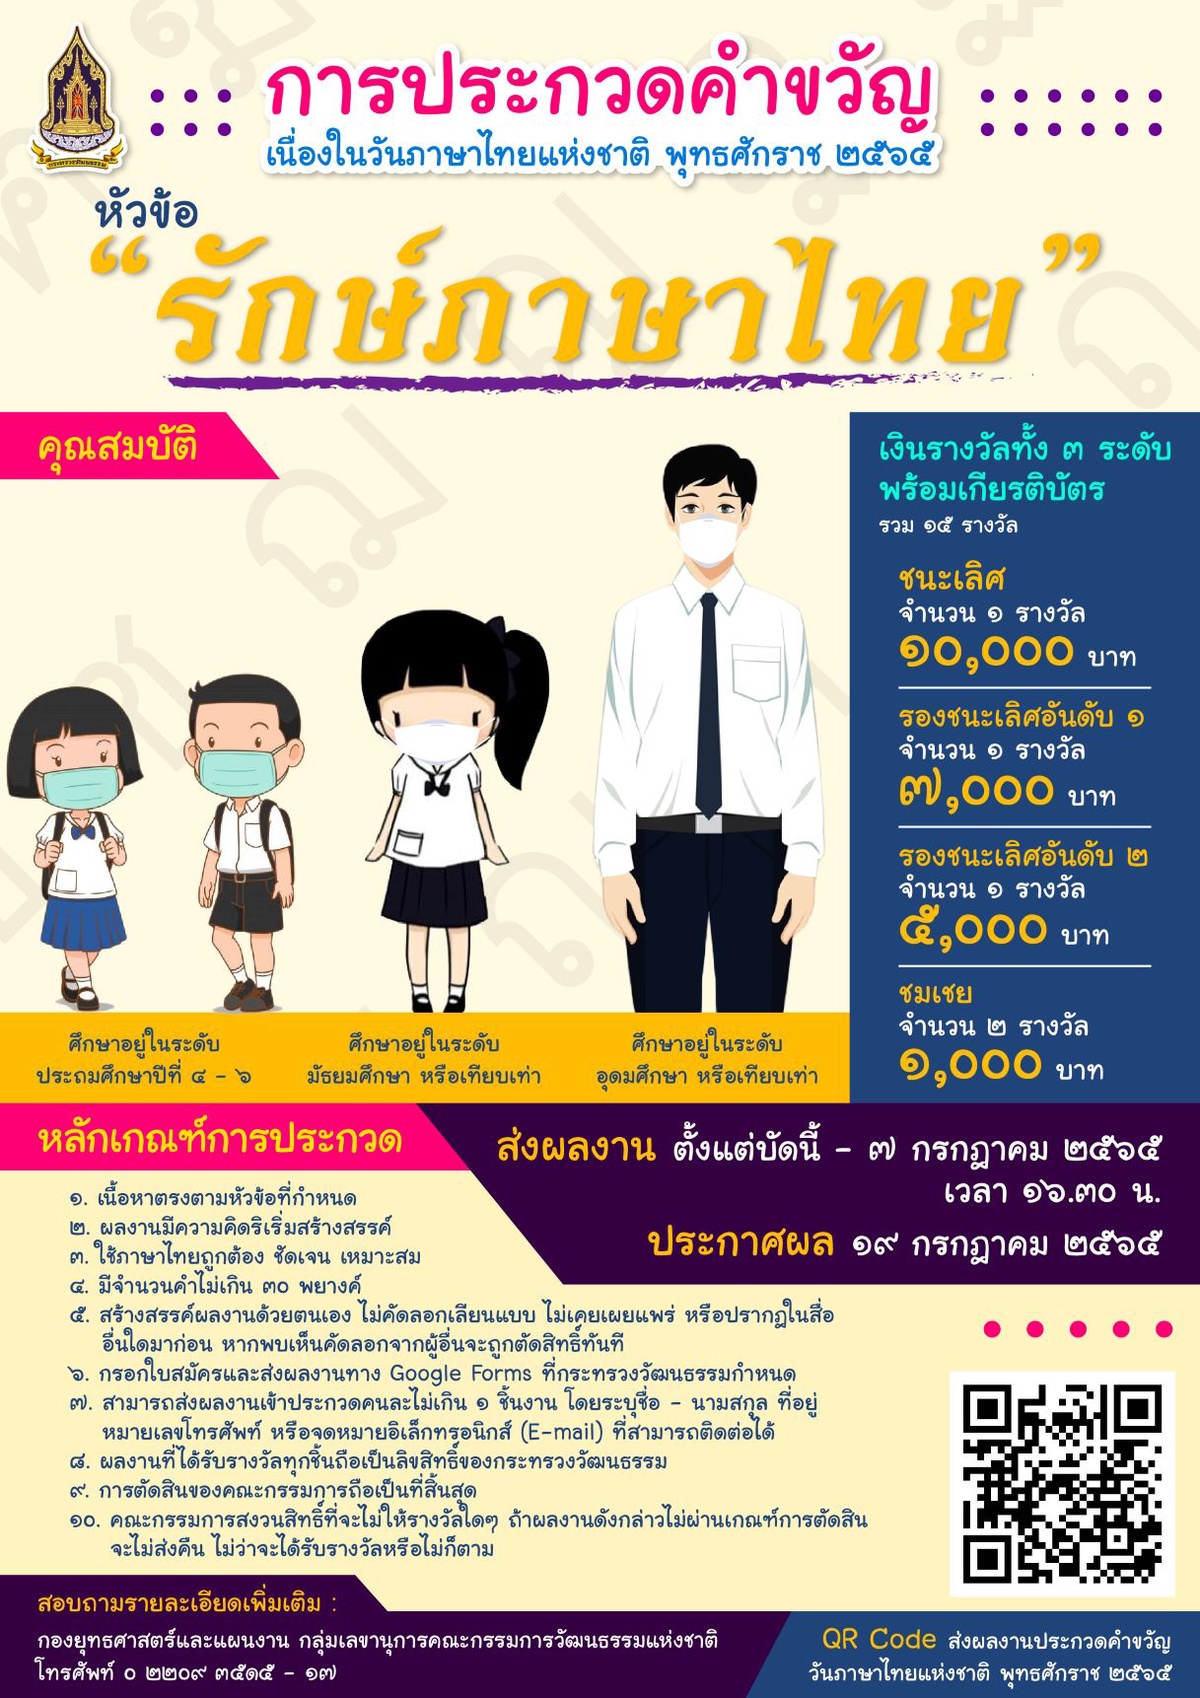 วธ. ชวนเด็กและเยาวชน ประชันคำขวัญ เนื่องในวันภาษาไทยแห่งชาติ 29 กรกฎาคม หัวข้อ รักษ์ภาษาไทย ชิงทุนการศึกษานับหมื่น ตั้งแต่วันนี้ - 7 ก.ค. 2565.